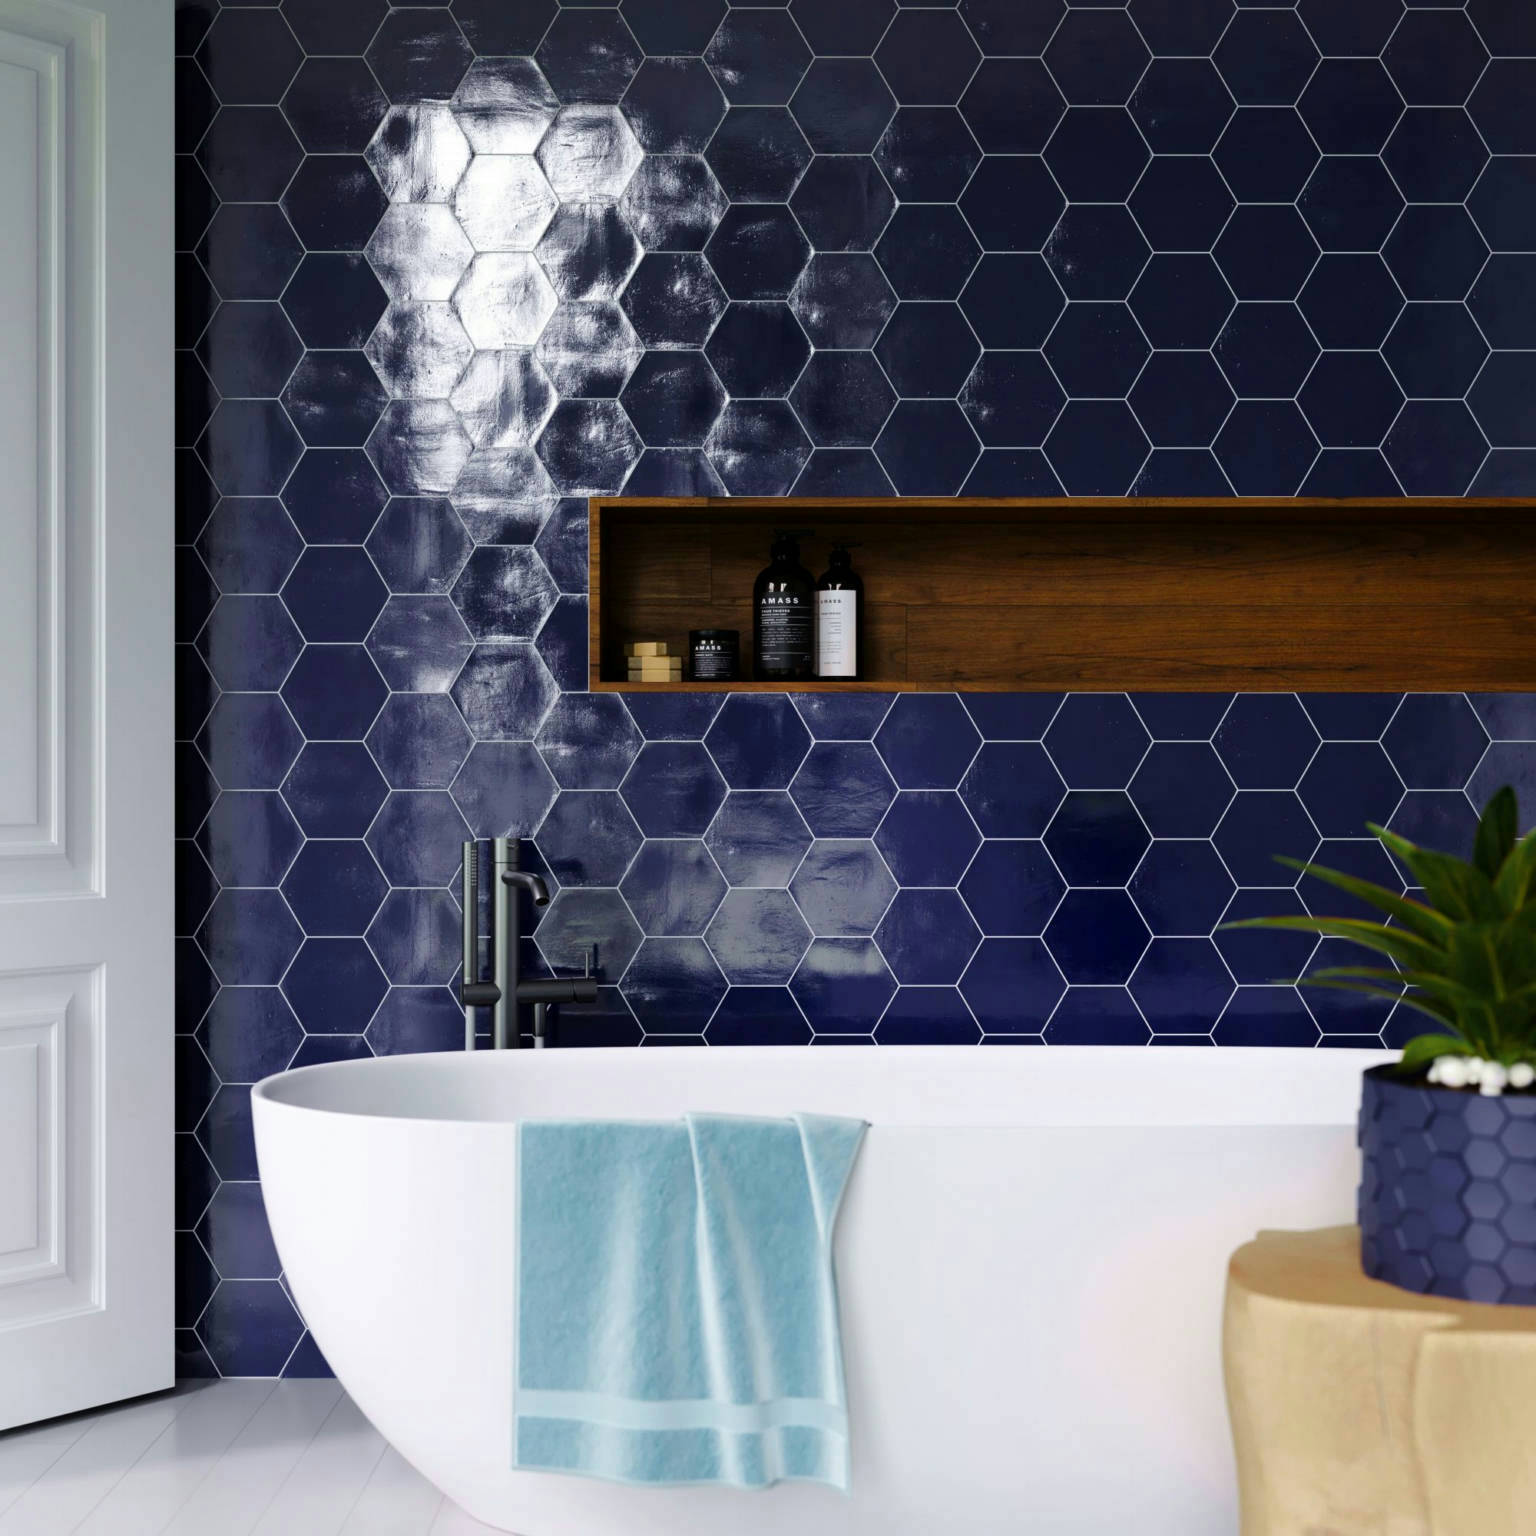 Ronda 5.5X6.3” Cobalt Hexagon | Qualis Ceramica | Luxury Tile and Vinyl at affordable prices